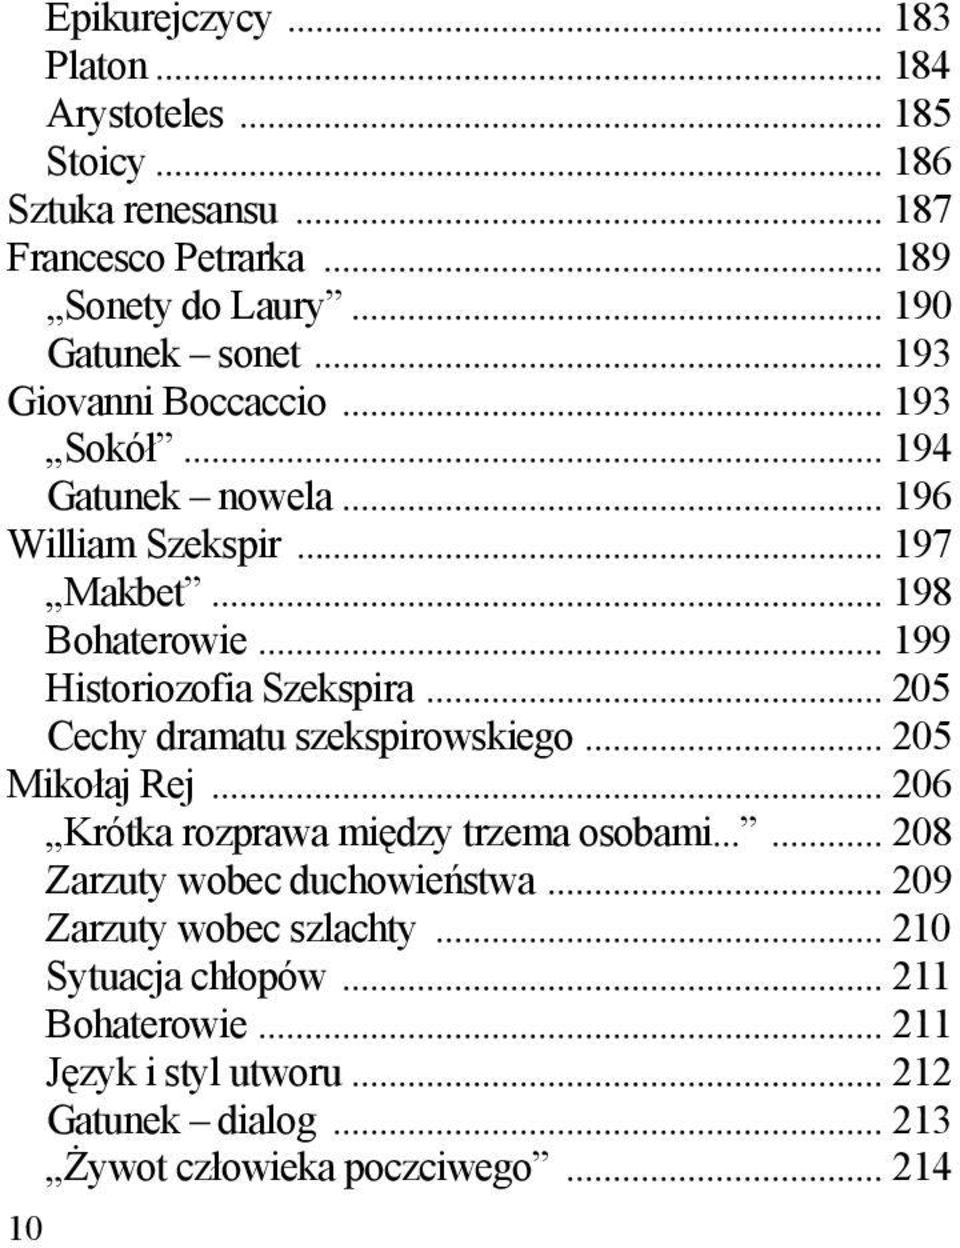 .. 205 Cechy dramatu szekspirowskiego... 205 Mikołaj Rej... 206 Krótka rozprawa między trzema osobami...... 208 Zarzuty wobec duchowieństwa.